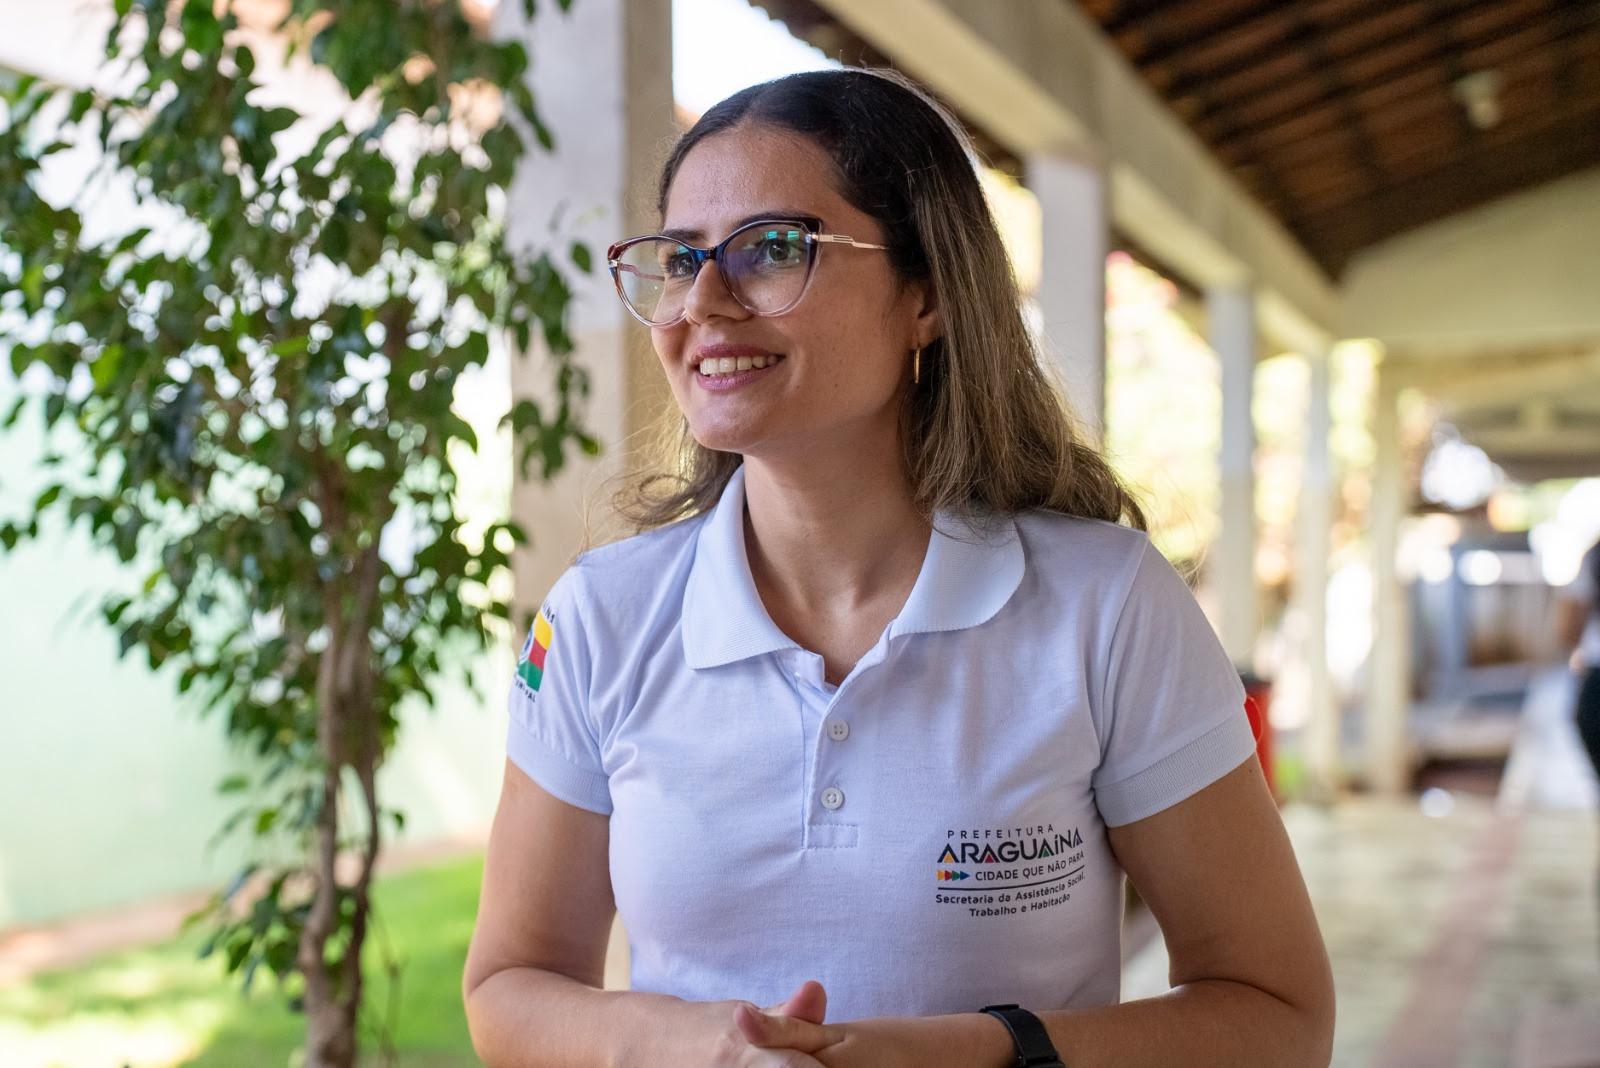 Lorena Lages destaca o papel mediador do assistente social, unindo órgãos e sociedade na luta contra o trabalho infantil. As ações são adaptadas à realidade local e focadas na proteção de crianças e adolescentes